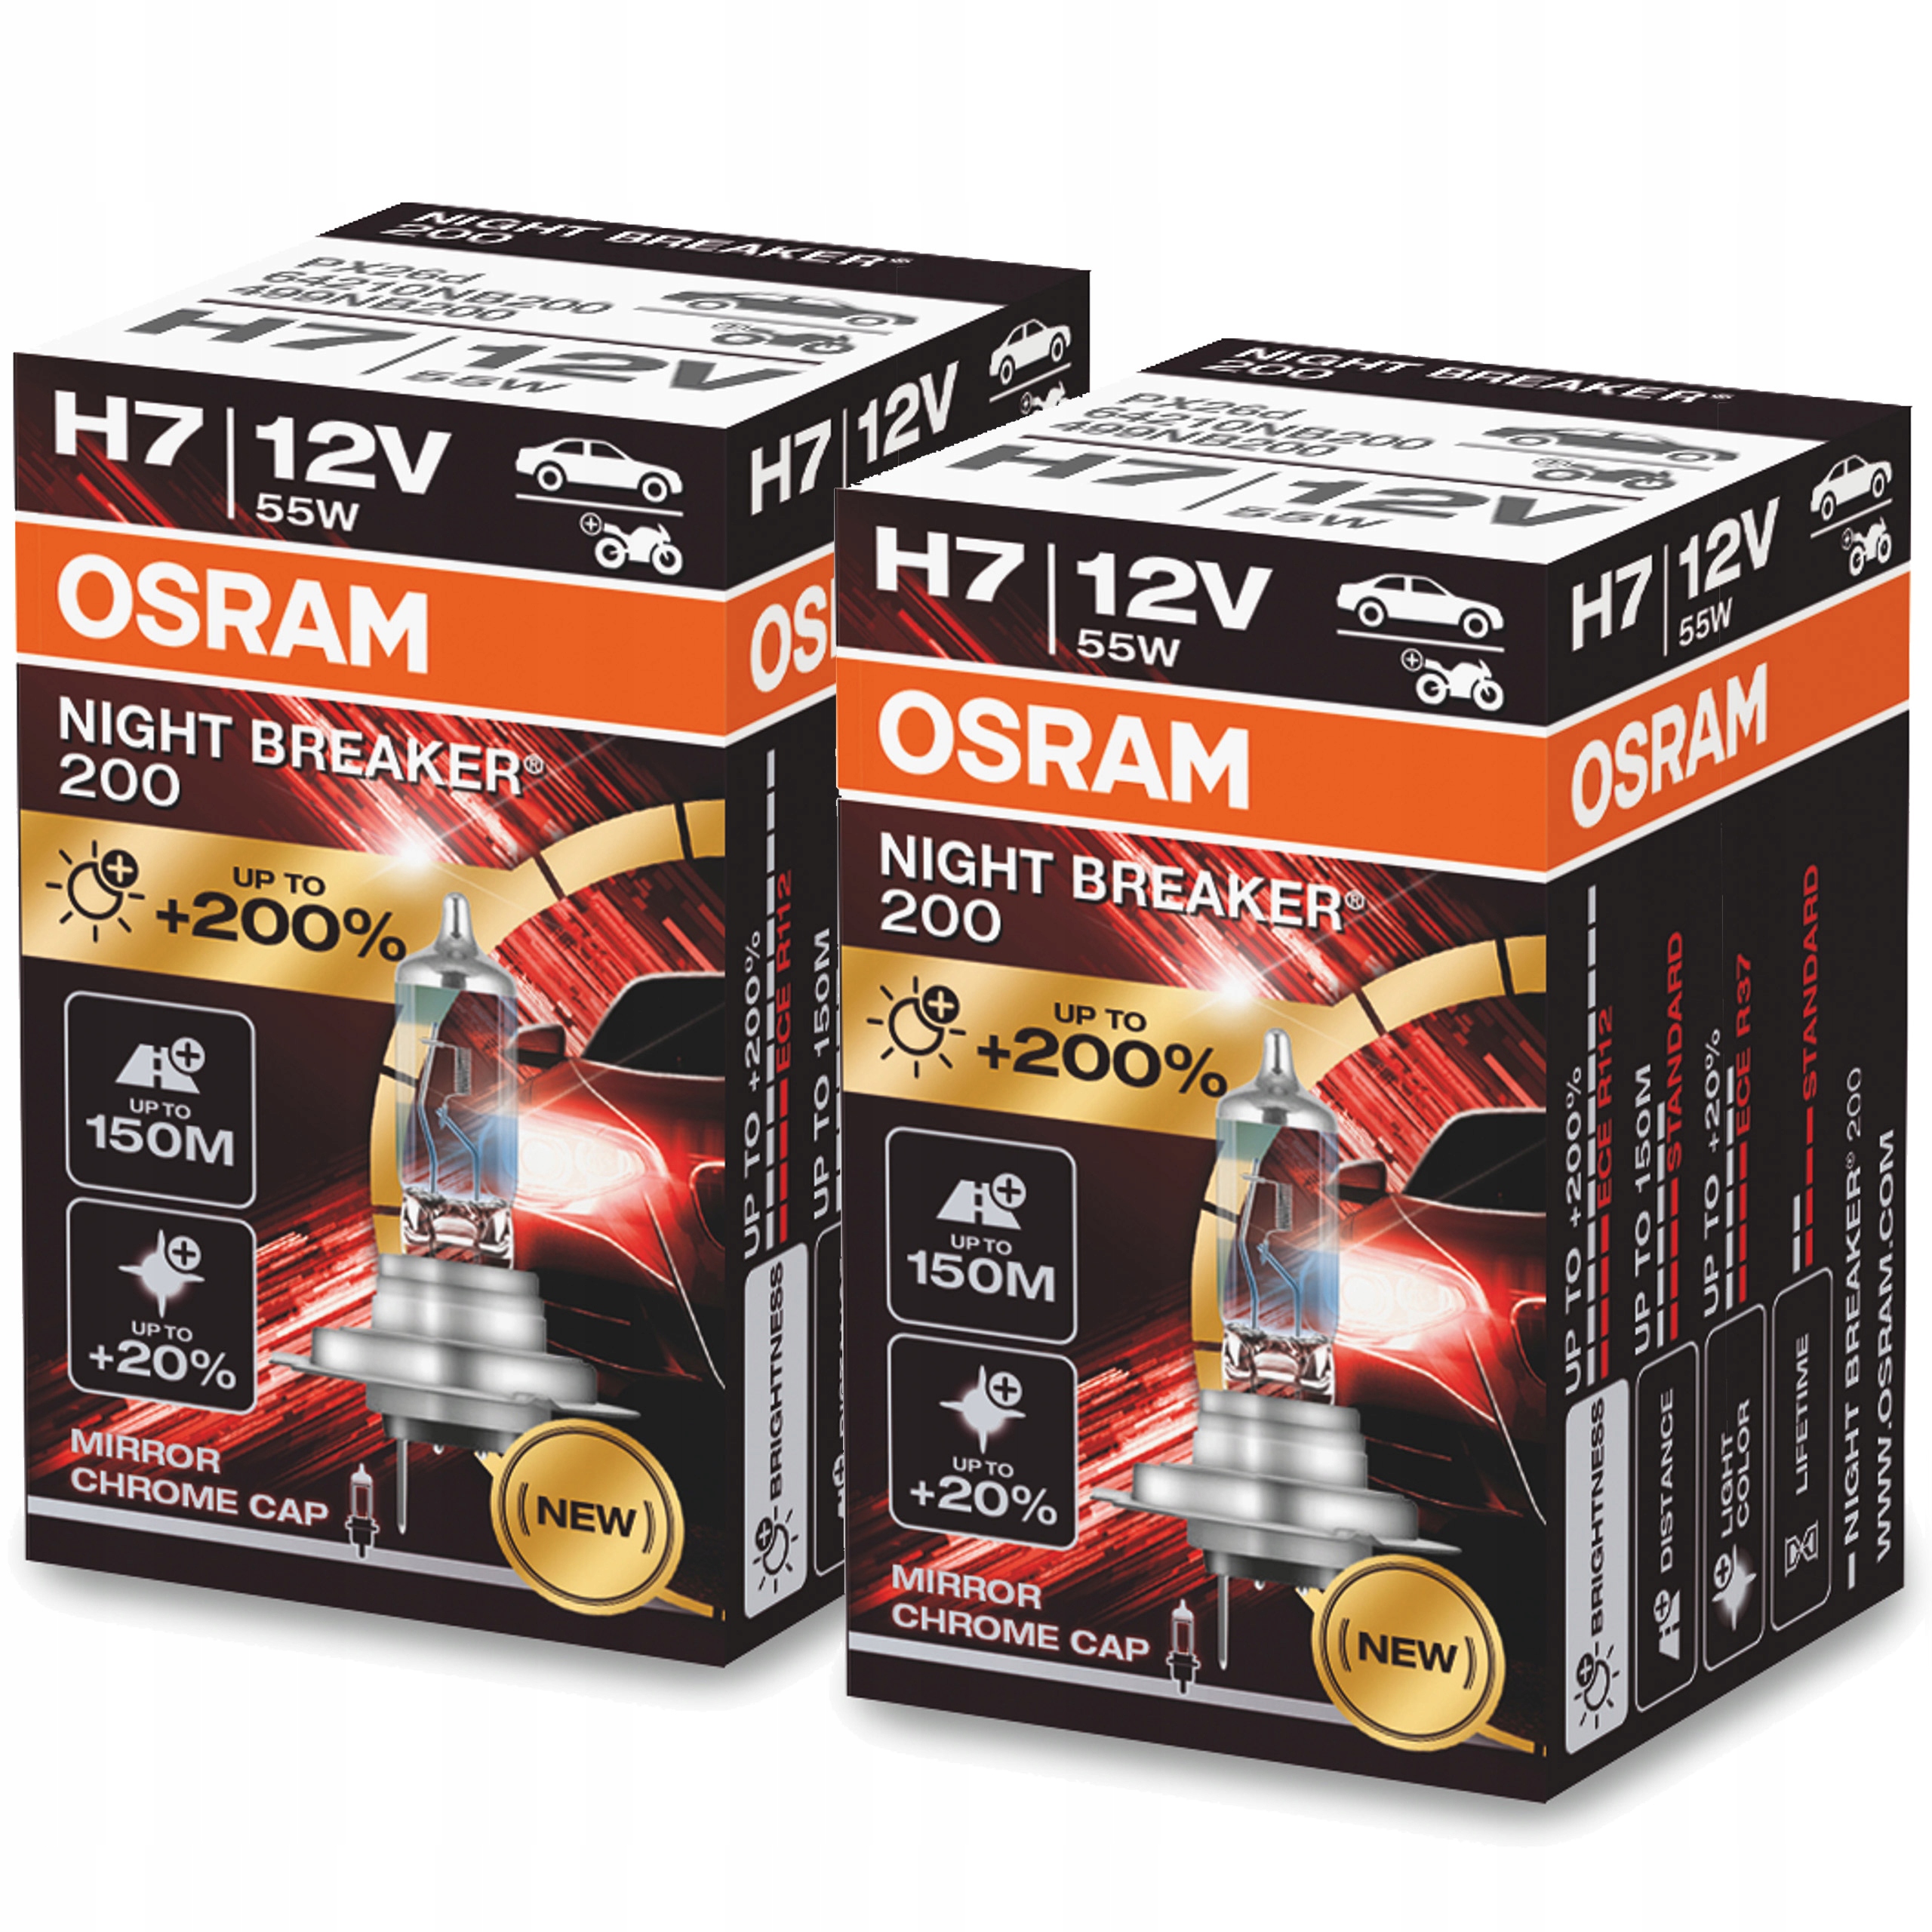 2 bombillas OSRAM Night Breaker Laser H7 12 V 55 W - Norauto